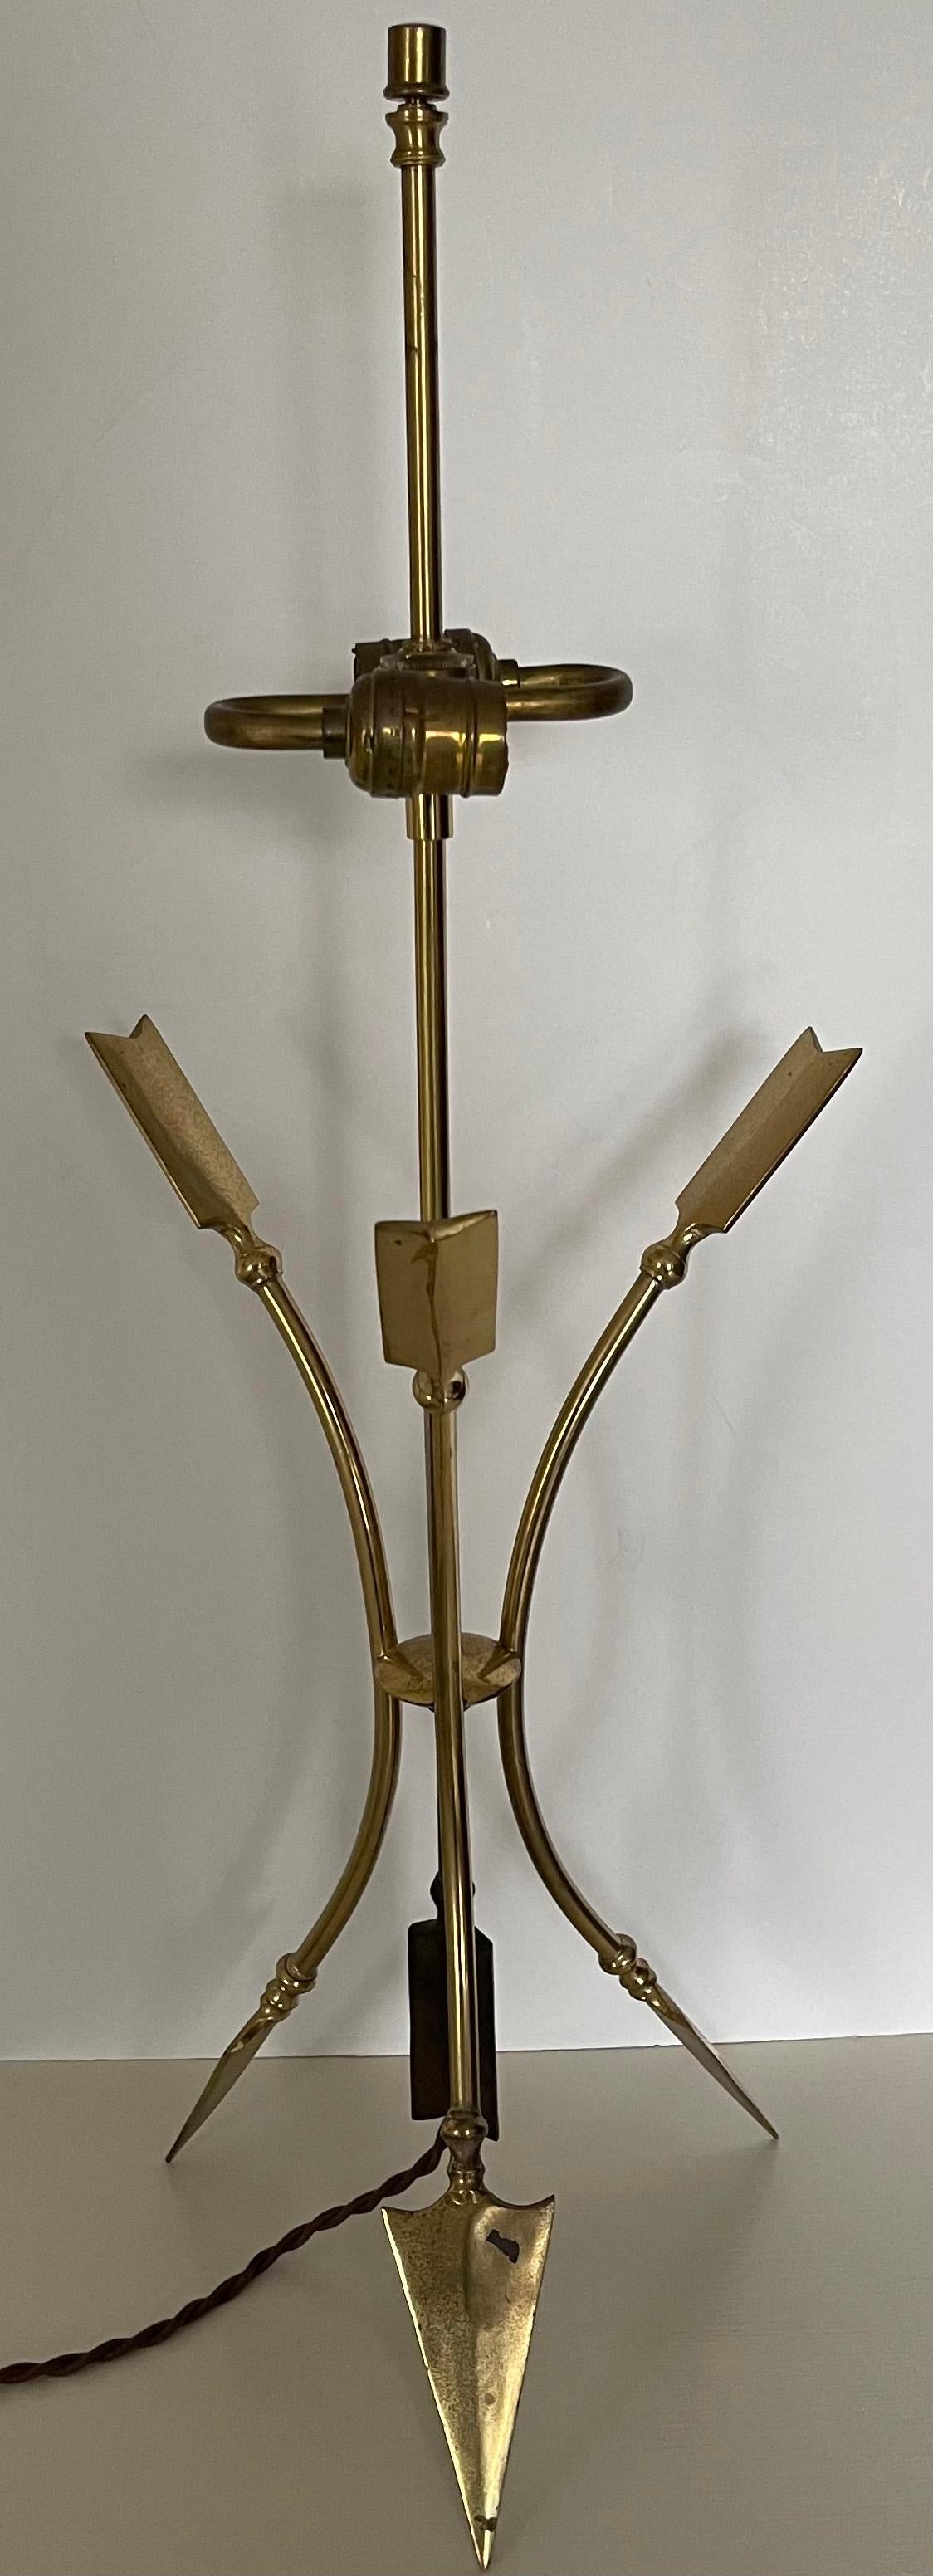 1960er Jahre Maison Jansen Lampe im Directorie-Stil aus Messing. Das Messing hat insgesamt eine unpolierte Patina. Keine Herstellermarke oder Signatur. 
Neu verdrahtet mit brauner, geflochtener Seidenkordel. Die Original-Doppelsteckdose hat neue